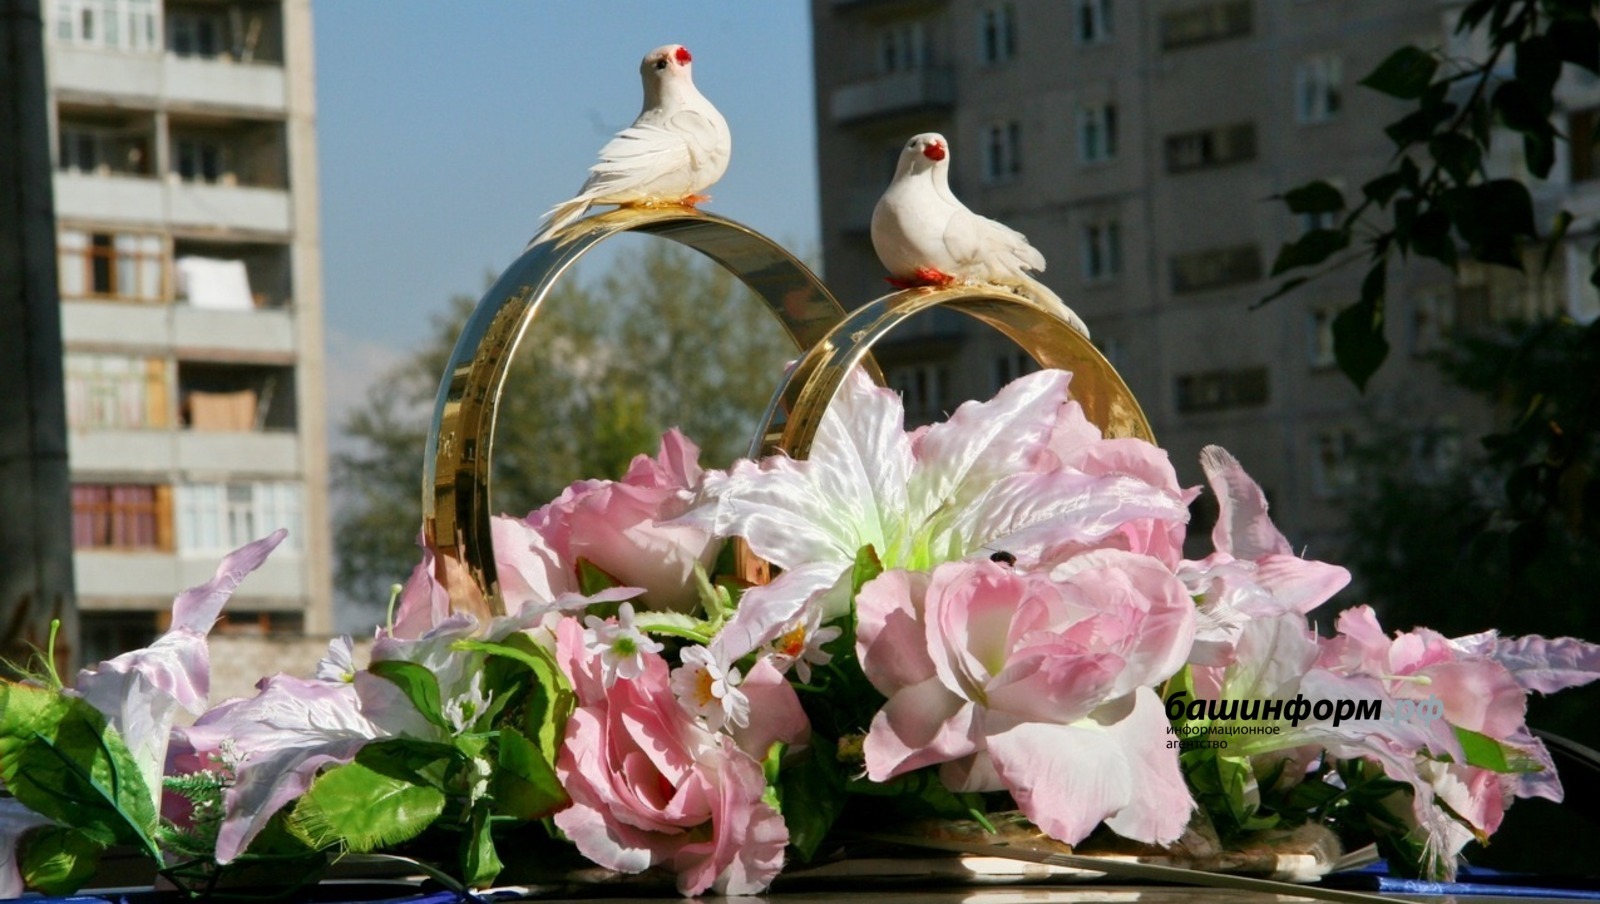 В Башкирии в День семьи, любви и верности сыграют свадьбу 300 пар